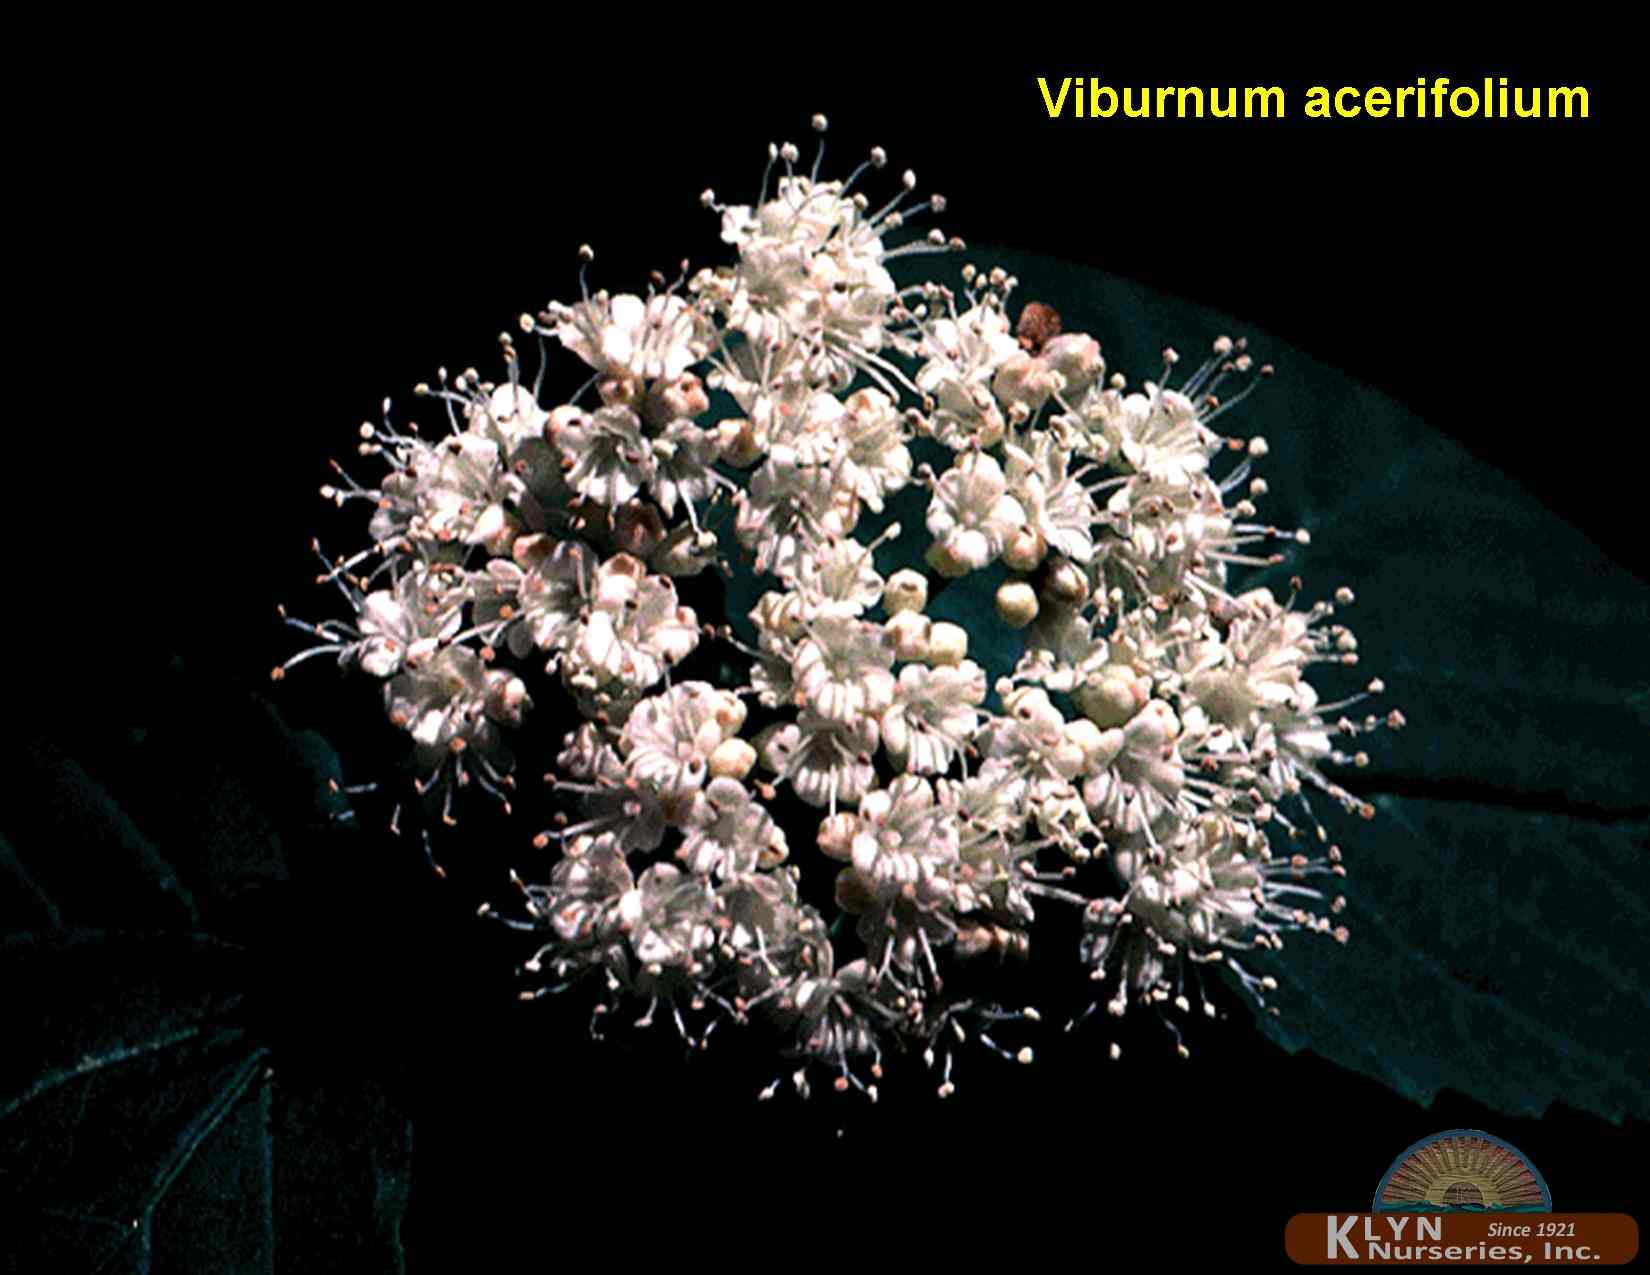 VIBURNUM acerifolium